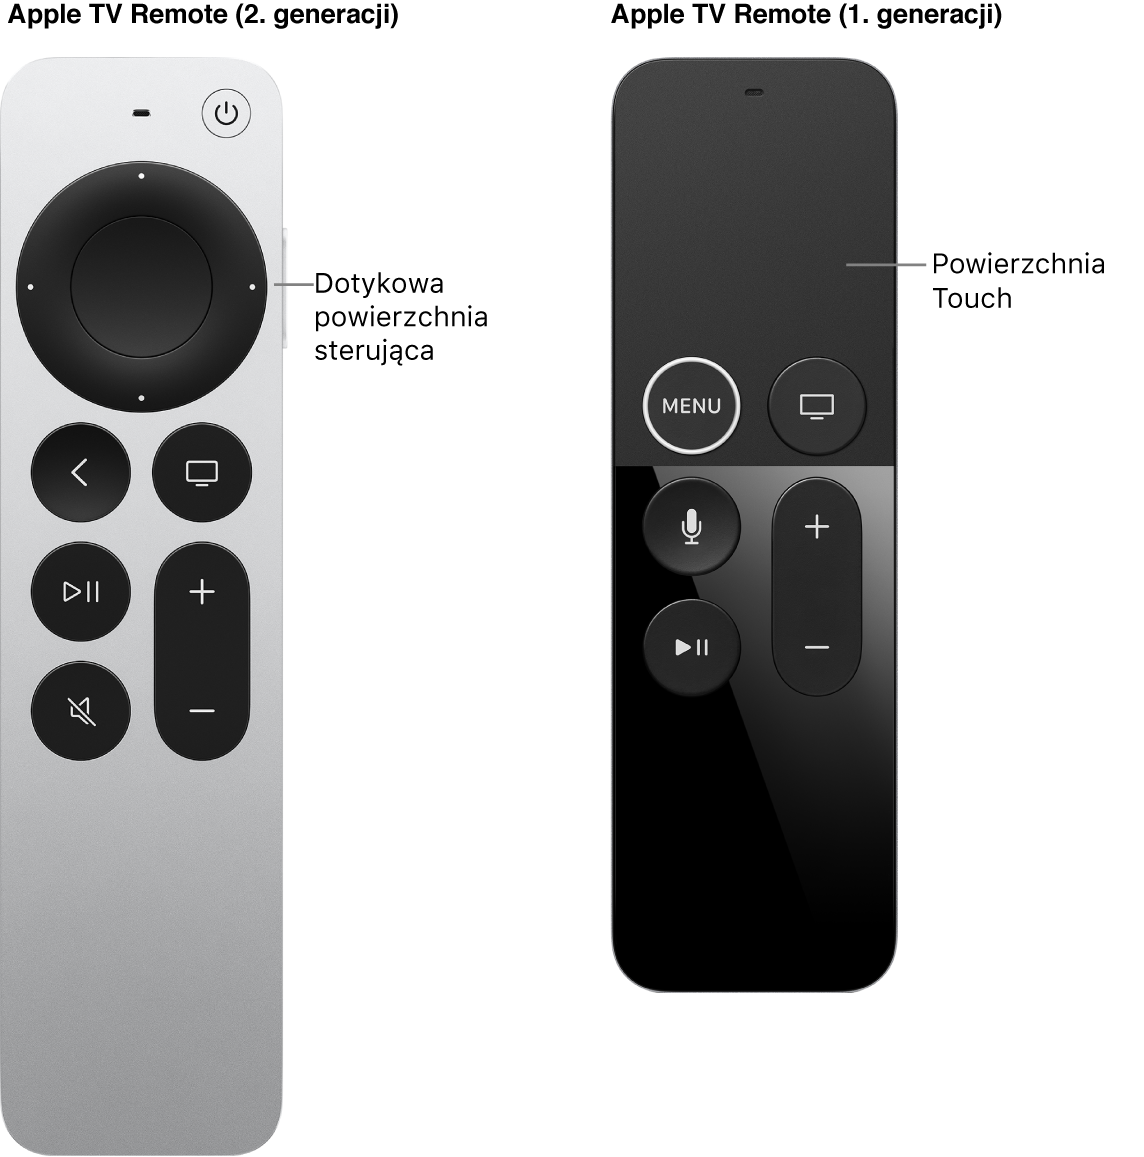 Pilot Apple TV Remote (2. generacji) z powierzchnią sterującą oraz pilot Apple TV Remote (1. generacji) z powierzchnią dotykową